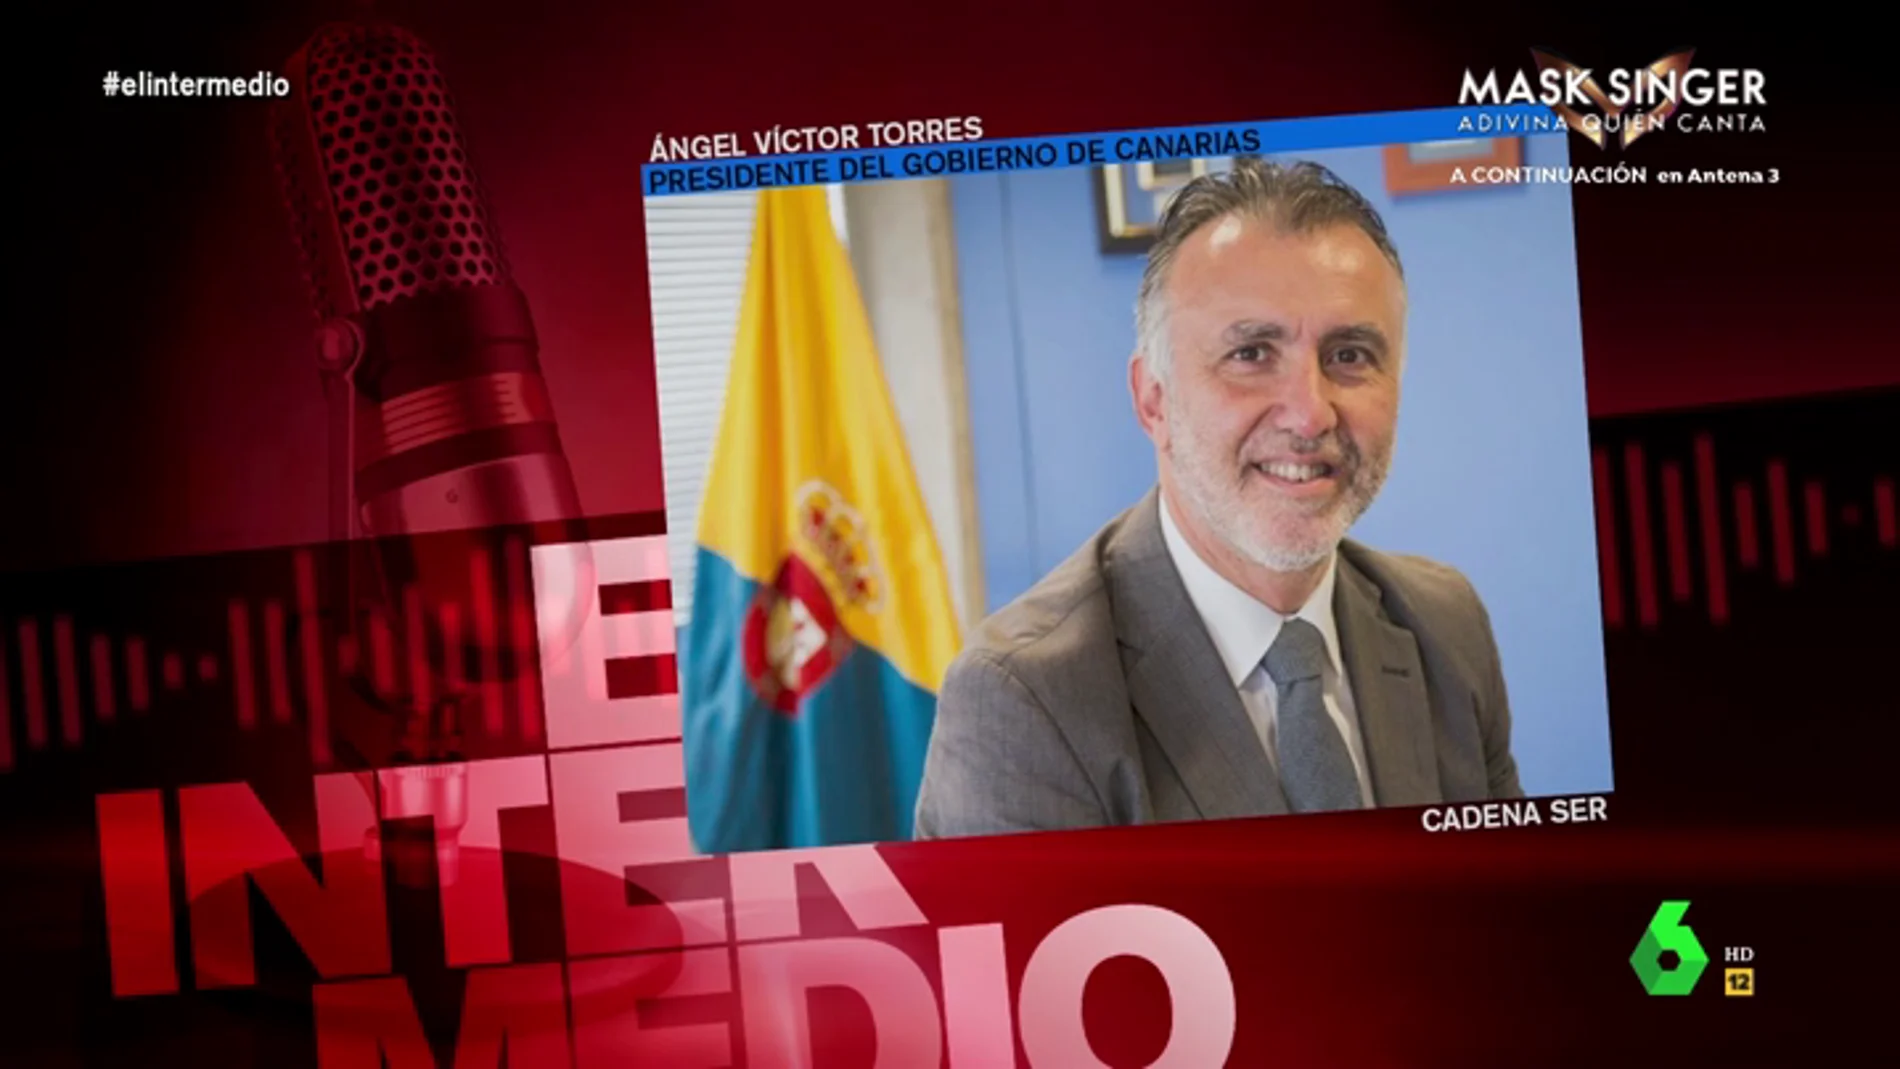 el surrealista análisis del presidente del Gobierno de Canarias sobre el COVID